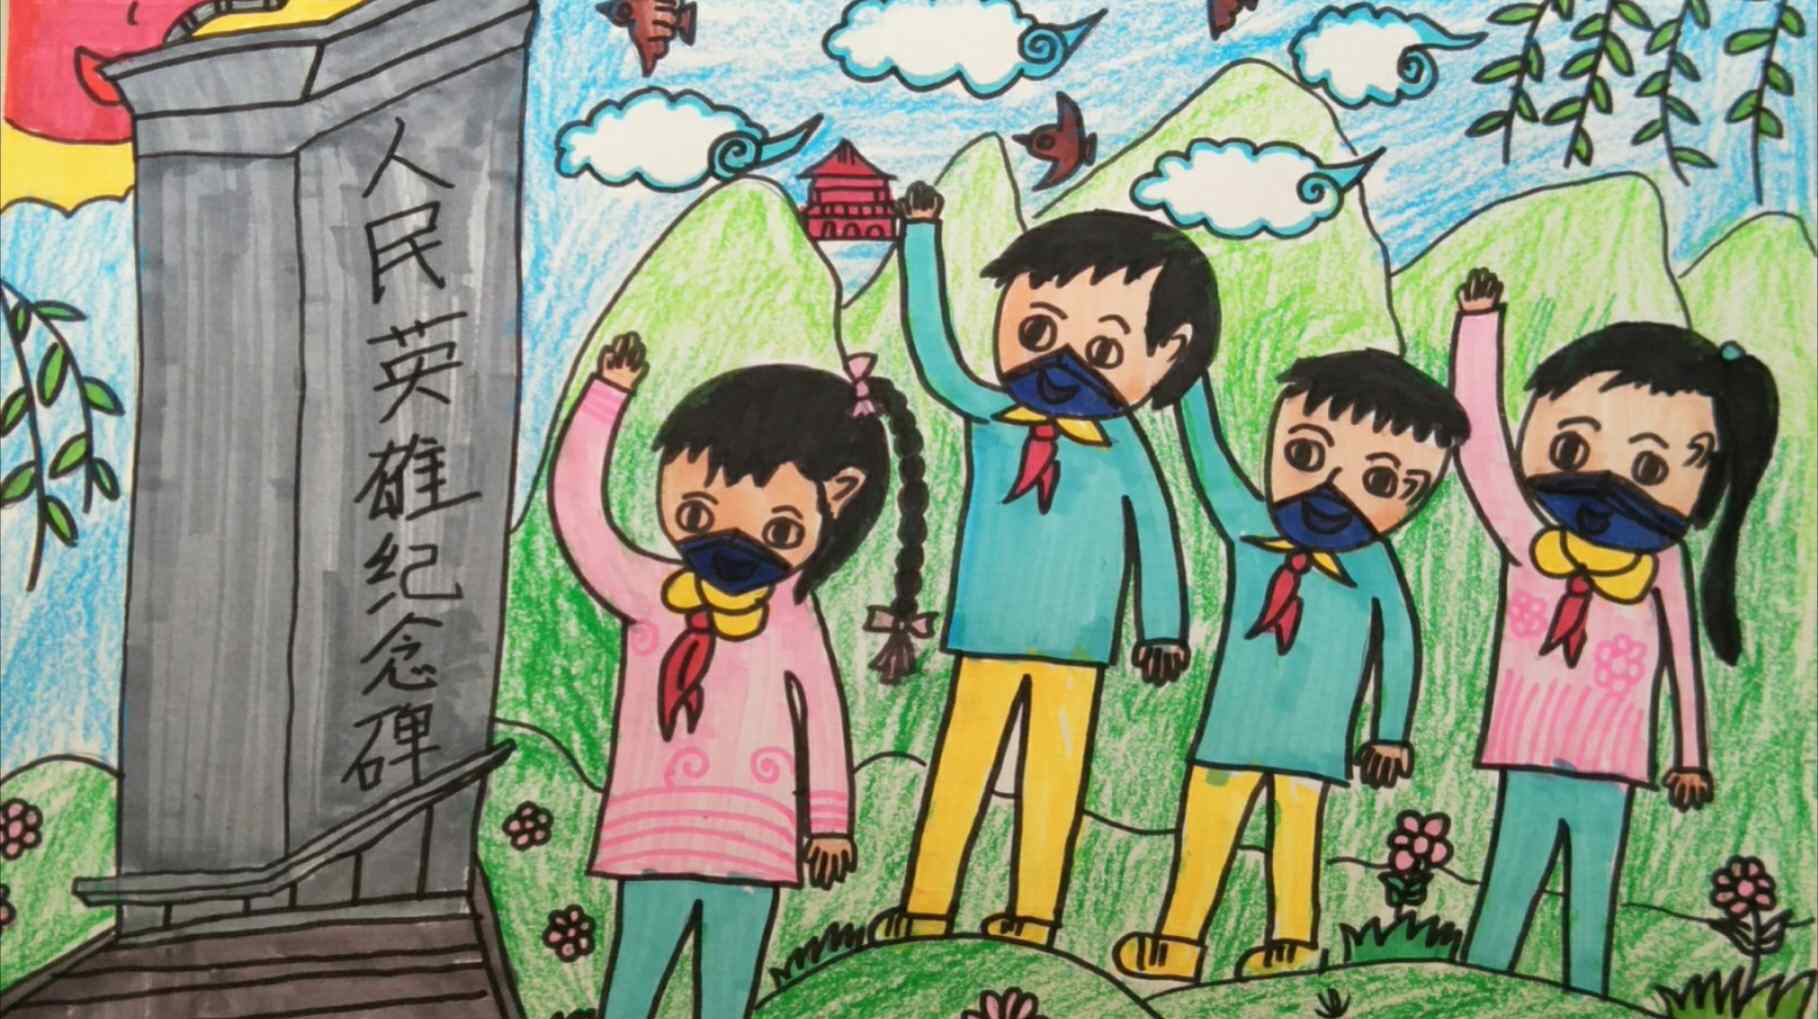 以清明节为主题的画 黄石江东中心小学"我们的节日一清明节"主题儿童画作品展